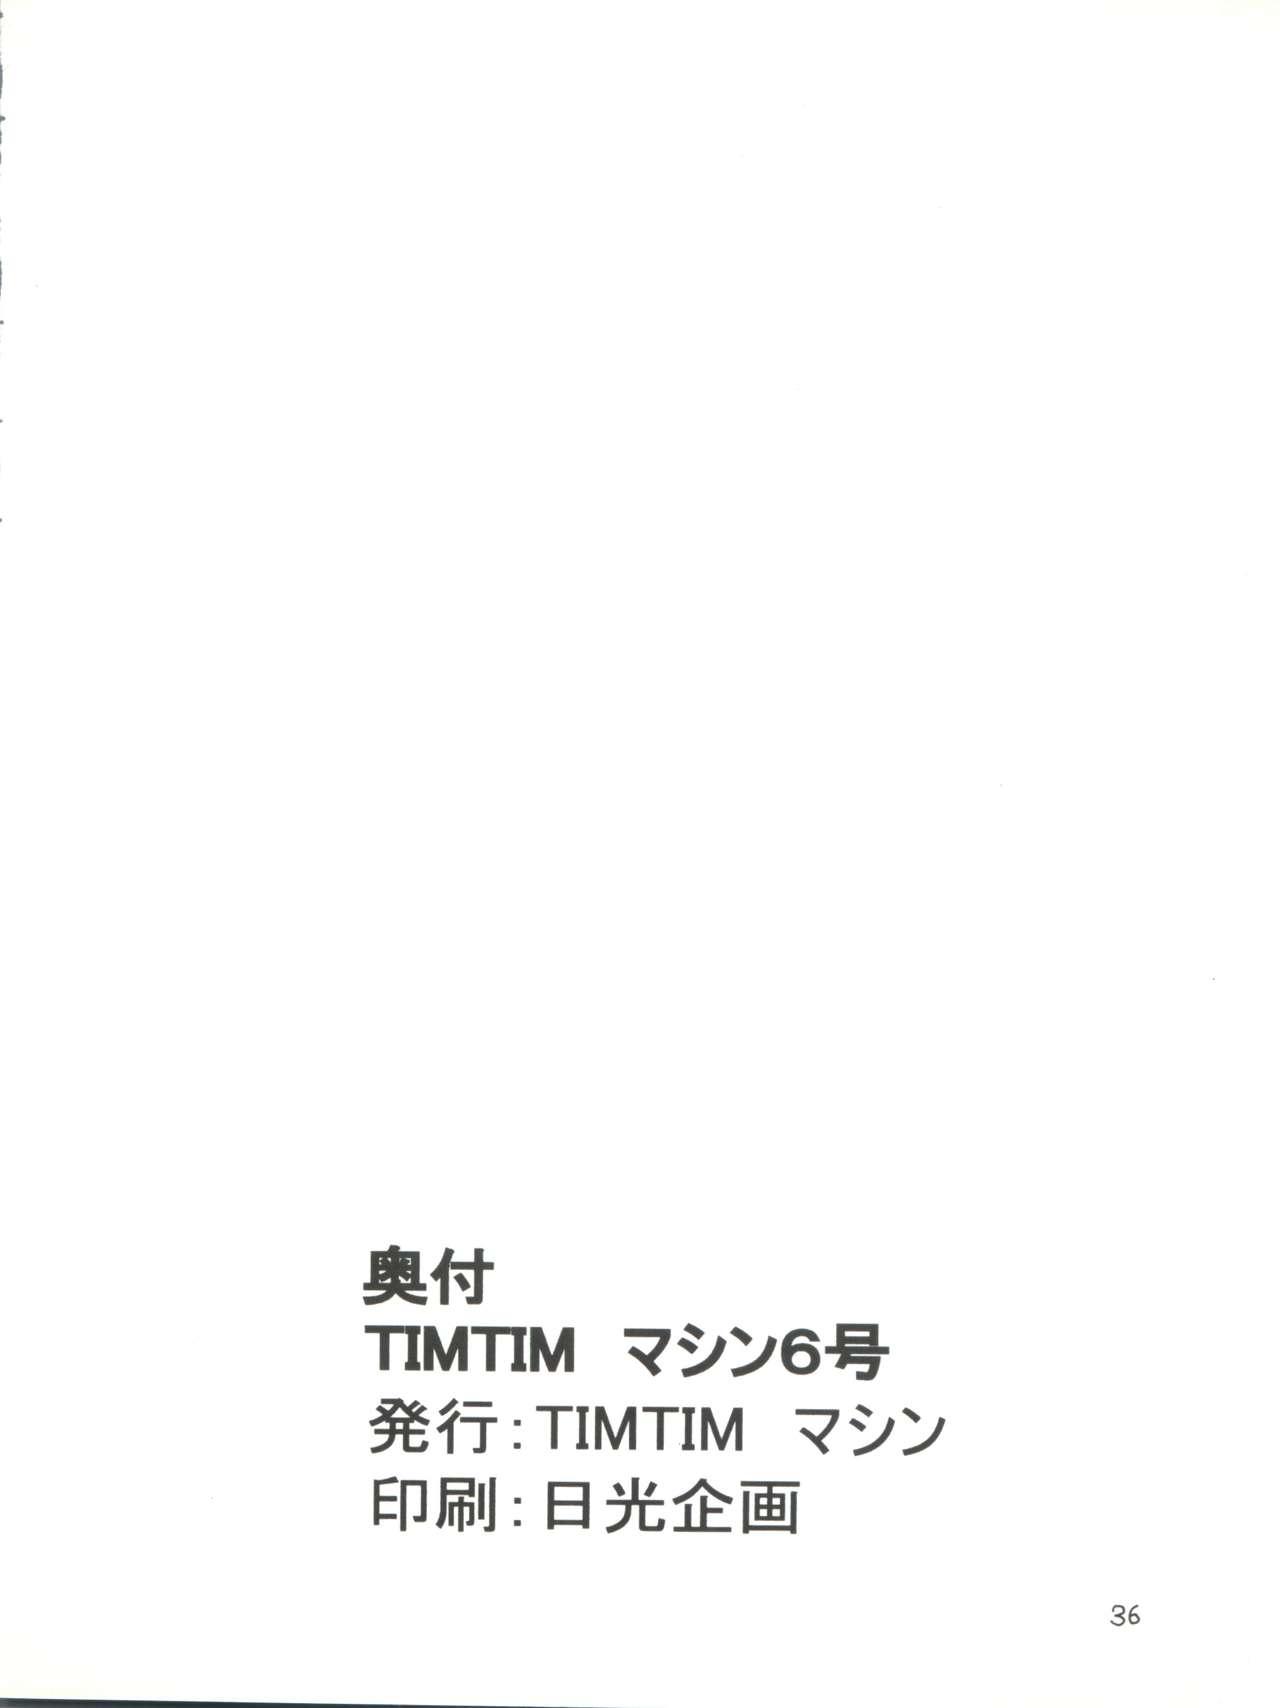 TIMTIM MACHINE 6-gou 35